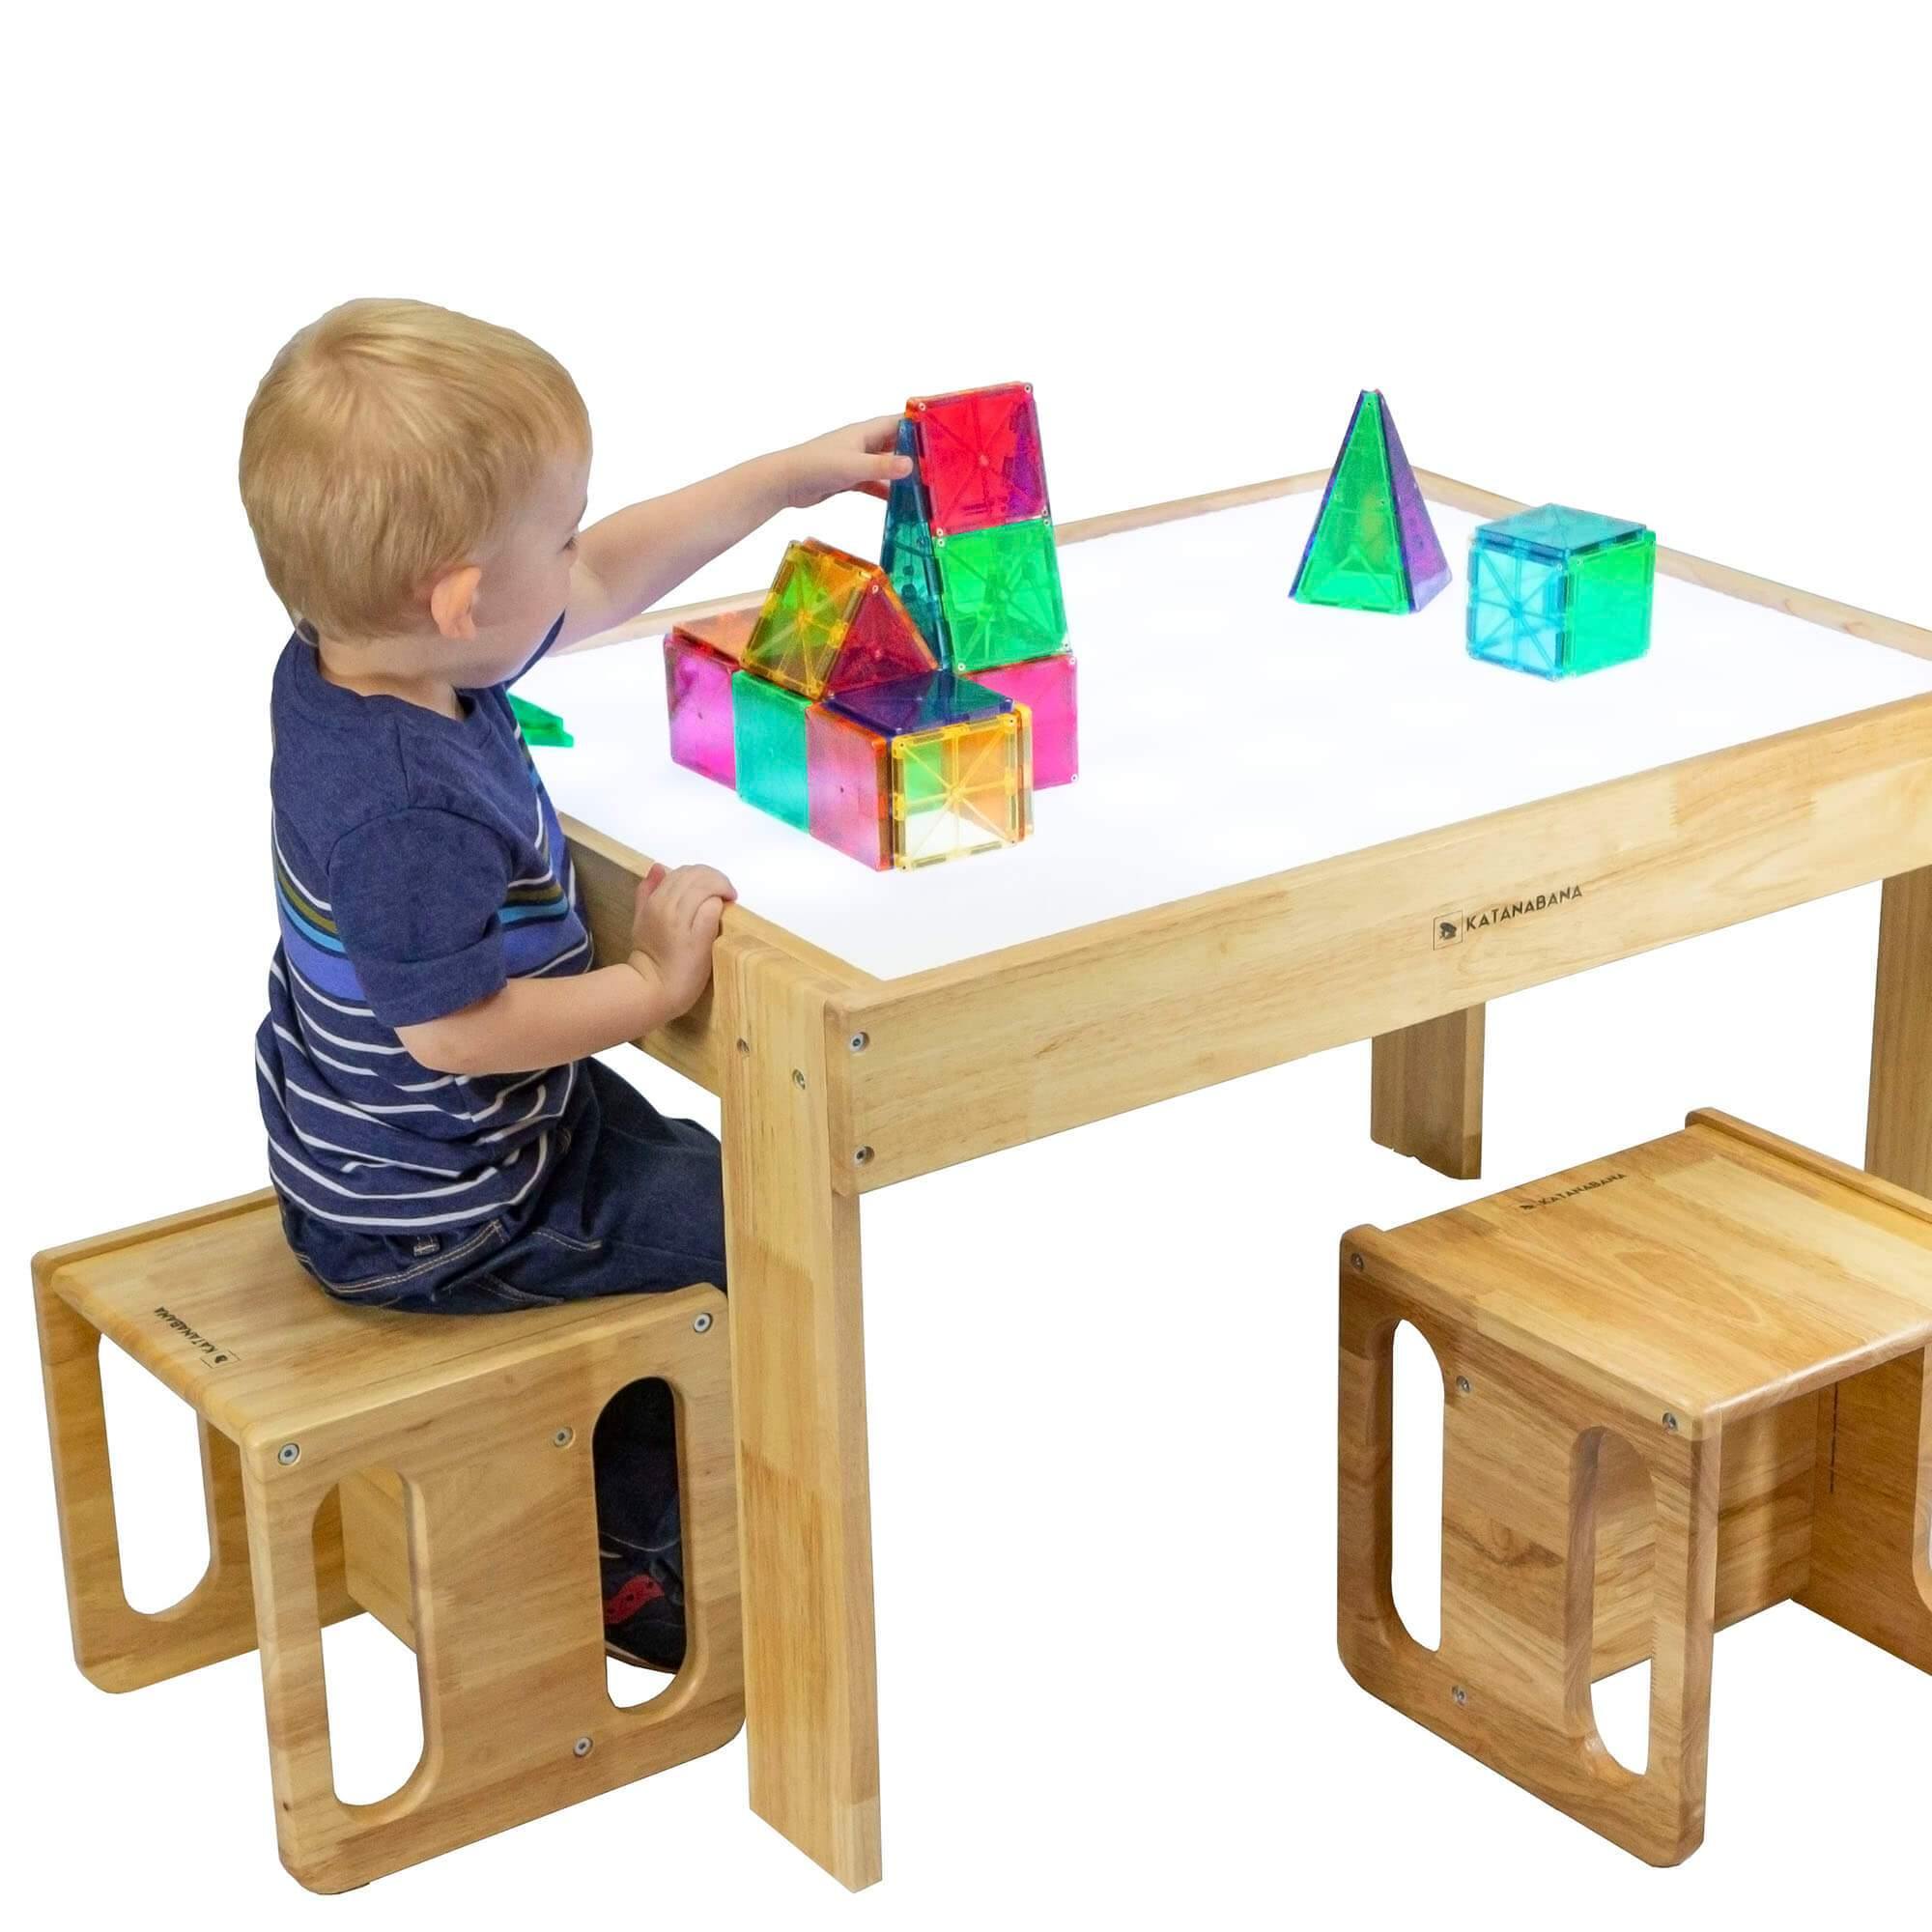 Light Table, Light Tables for Kids